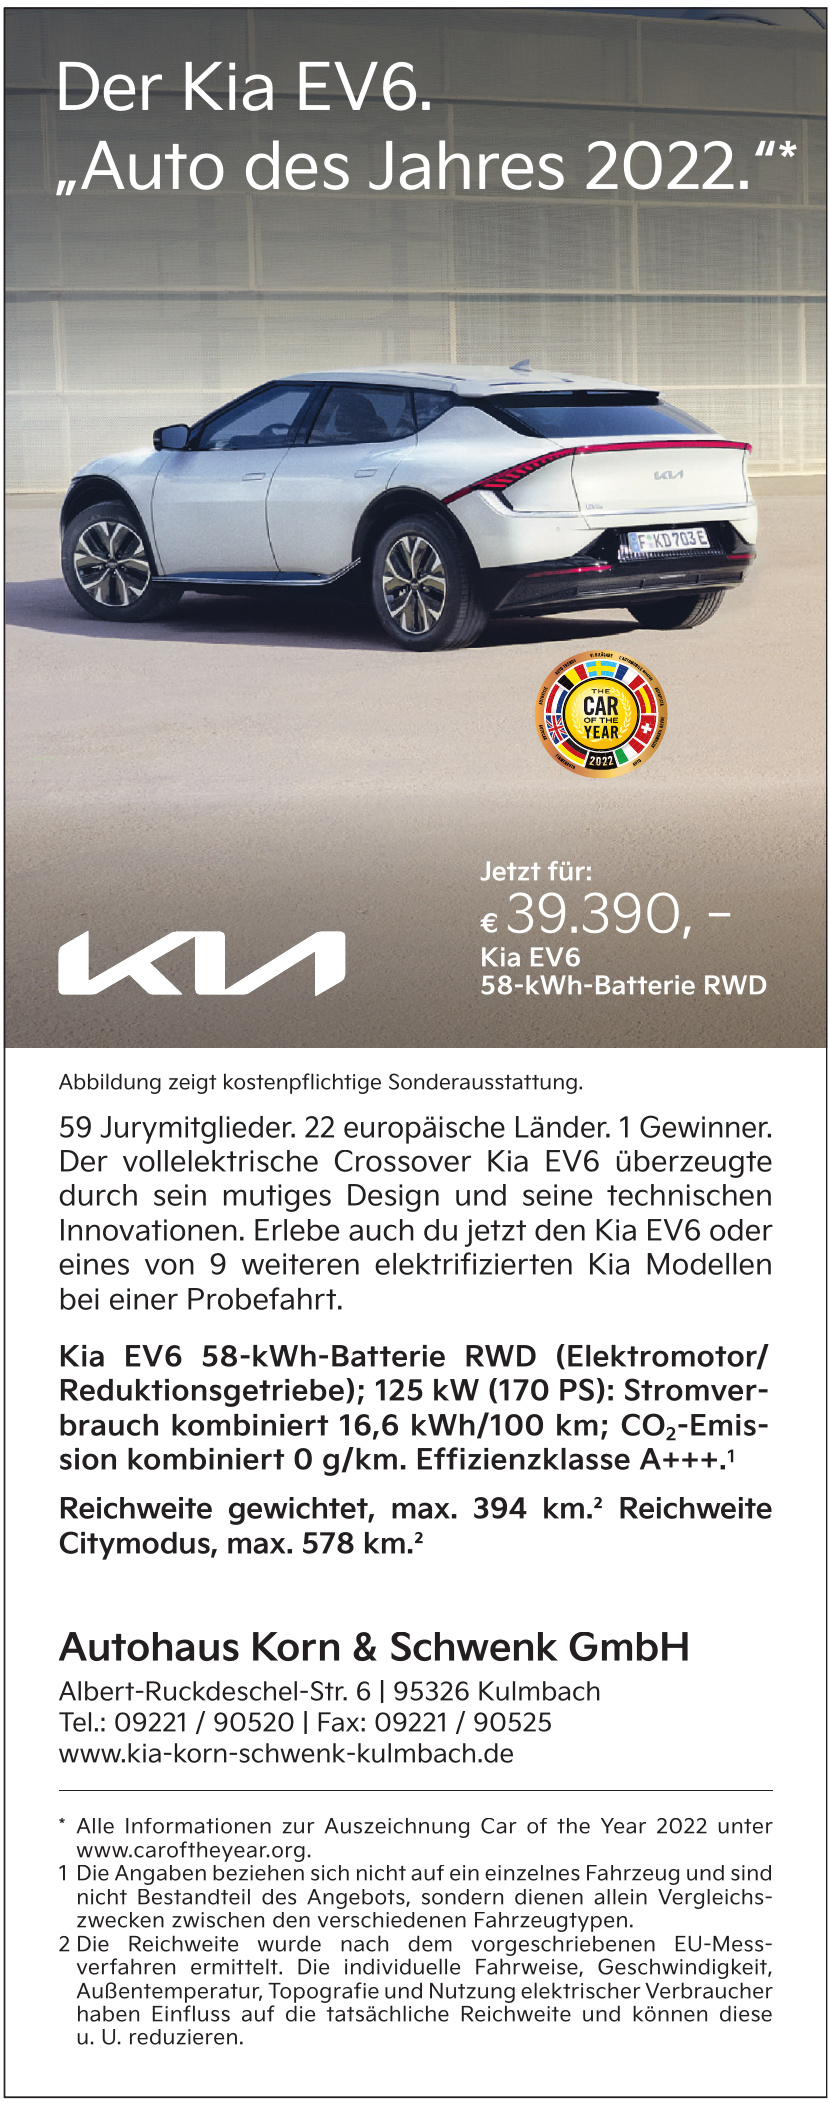 Autohaus Korn & Schwenk GmbH